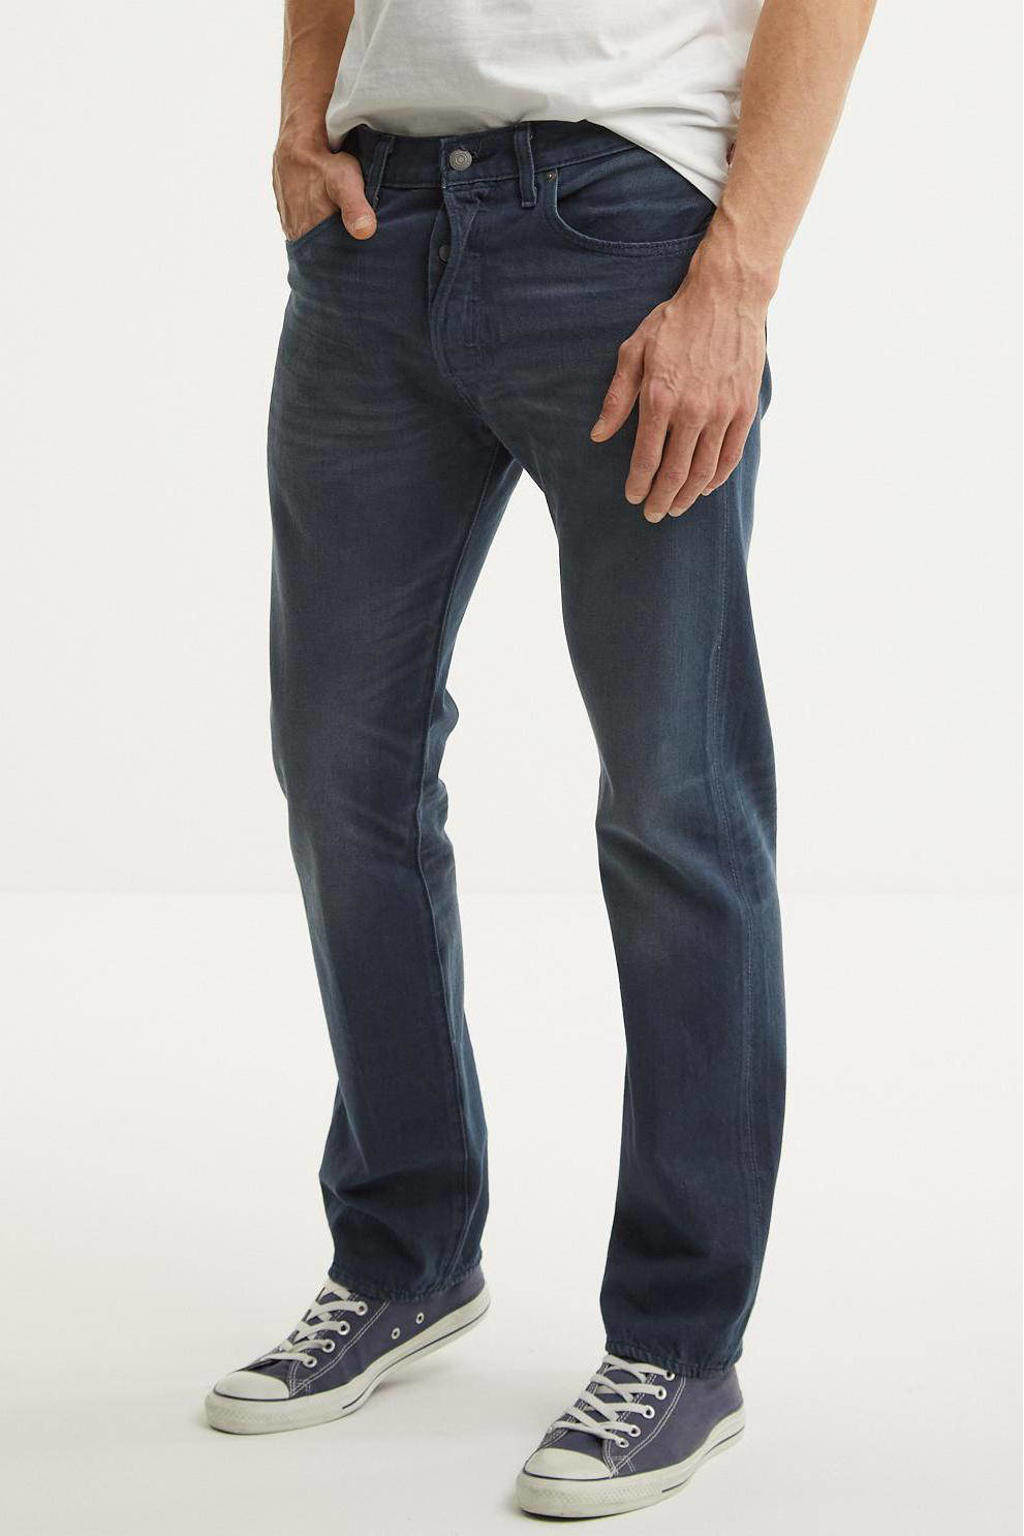 Levi's 501 regular fit jeans space money